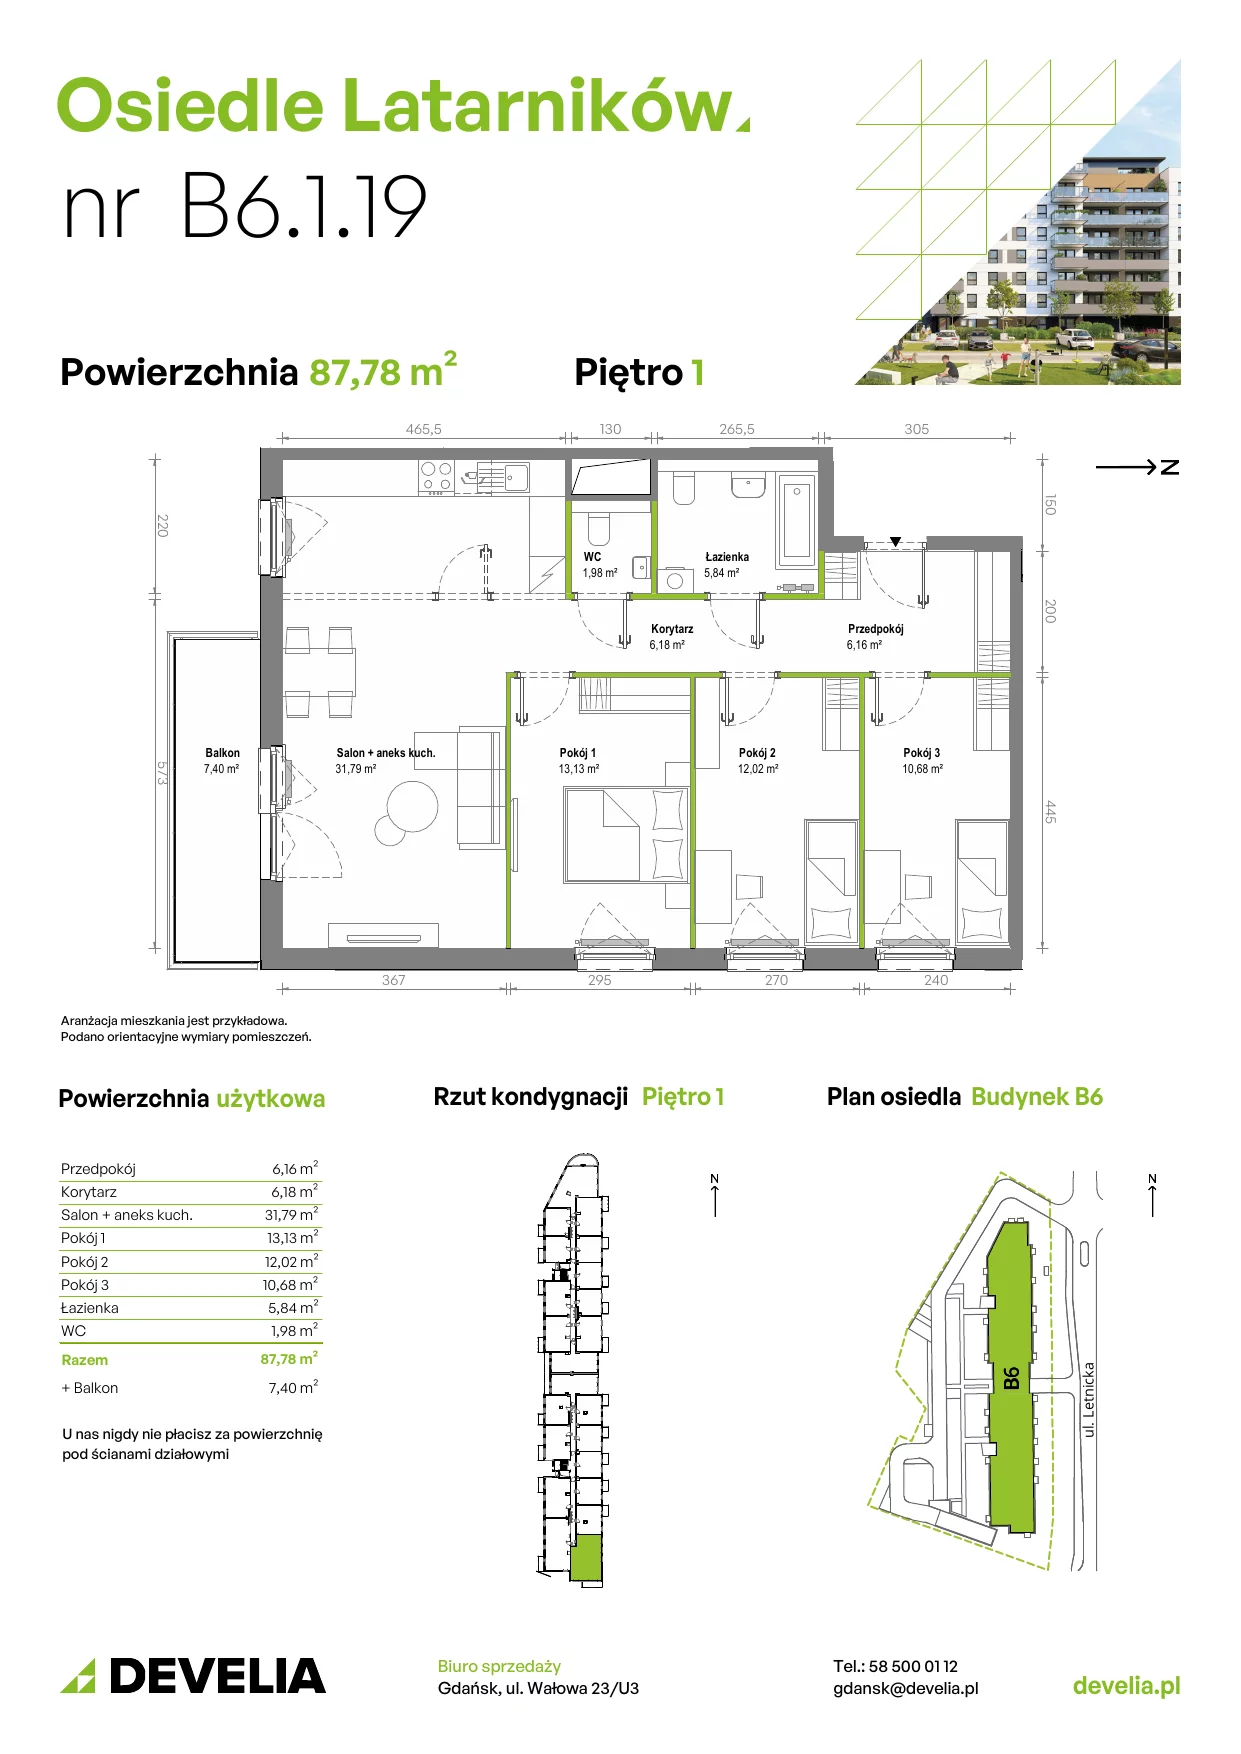 Mieszkanie 87,72 m², piętro 1, oferta nr B6.1.019, Osiedle Latarników, Gdańsk, Letnica, ul. Letnicka 1